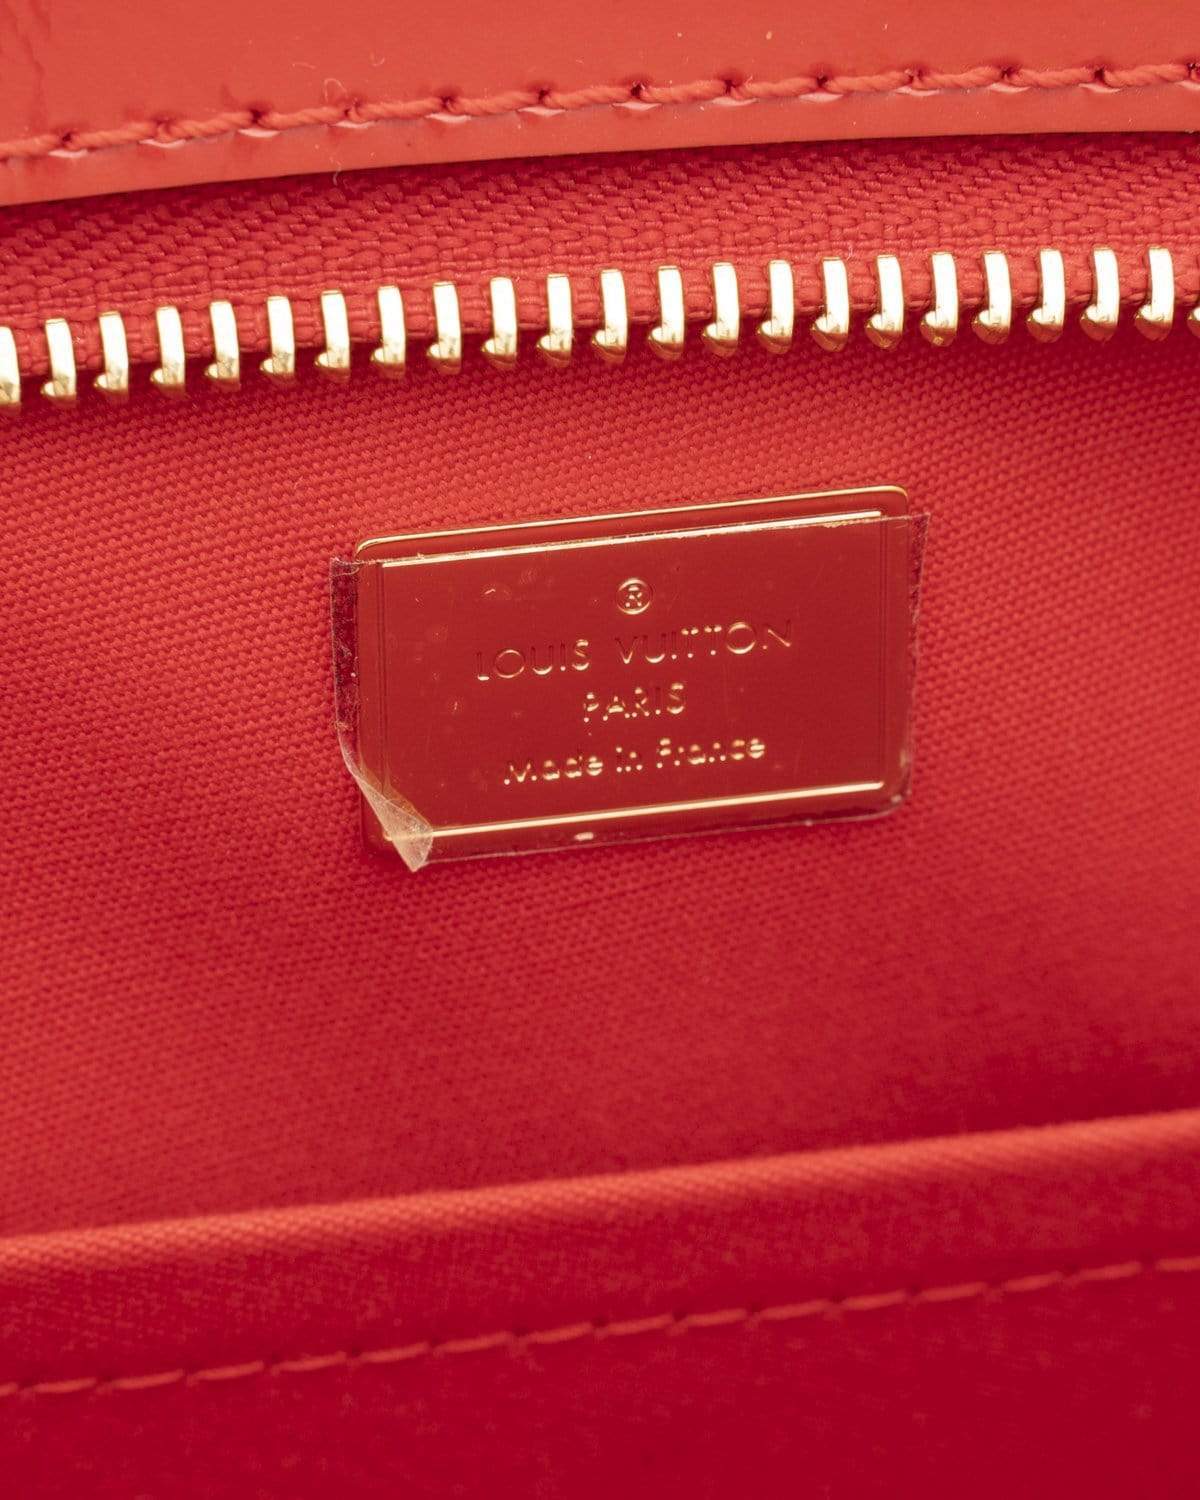 Louis Vuitton Louis Vuitton Motainge Red Vernis Small Bag - ADL1662